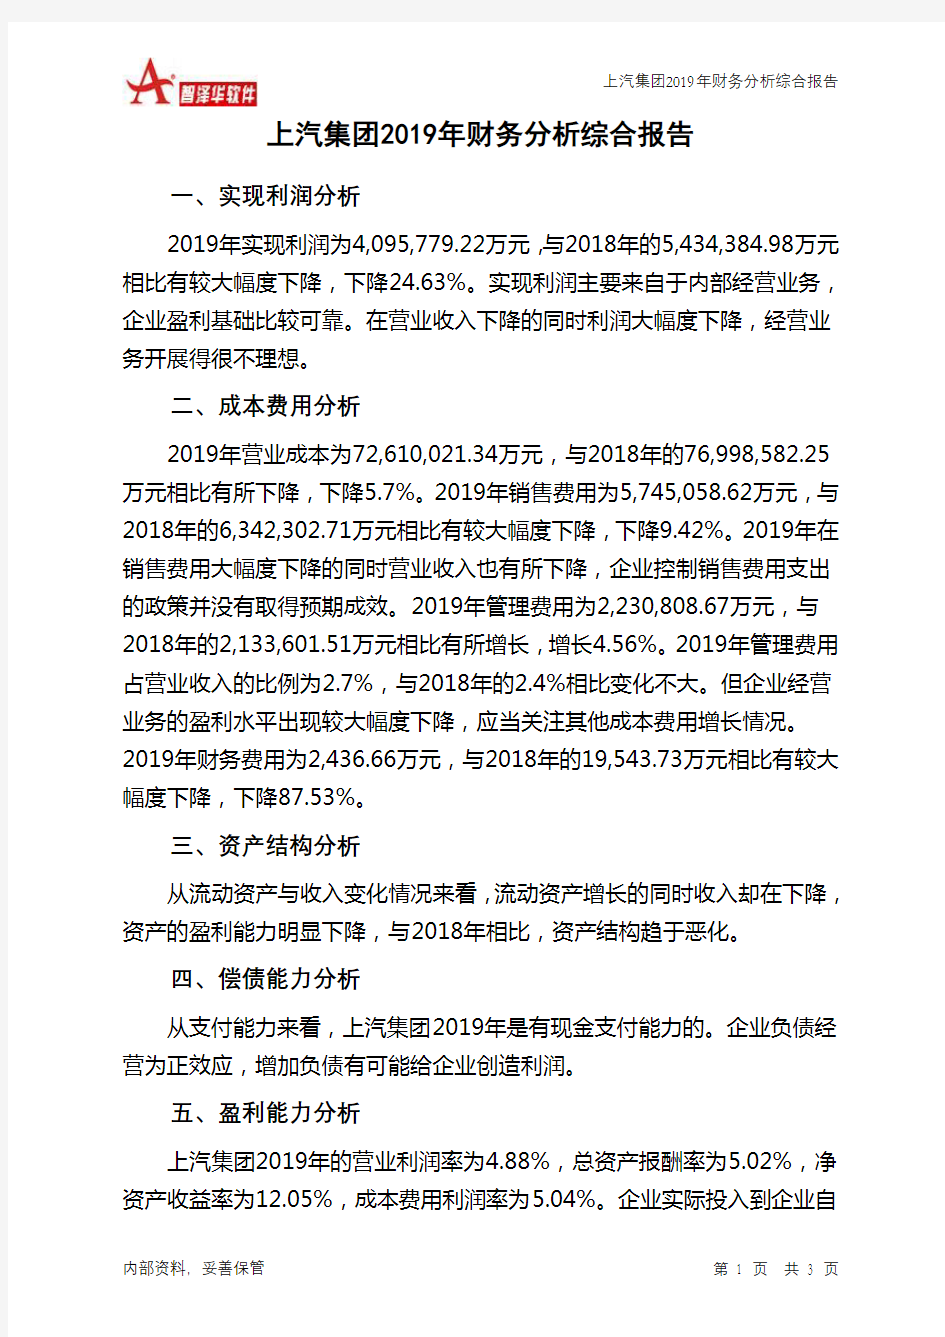 上汽集团2019年财务分析结论报告